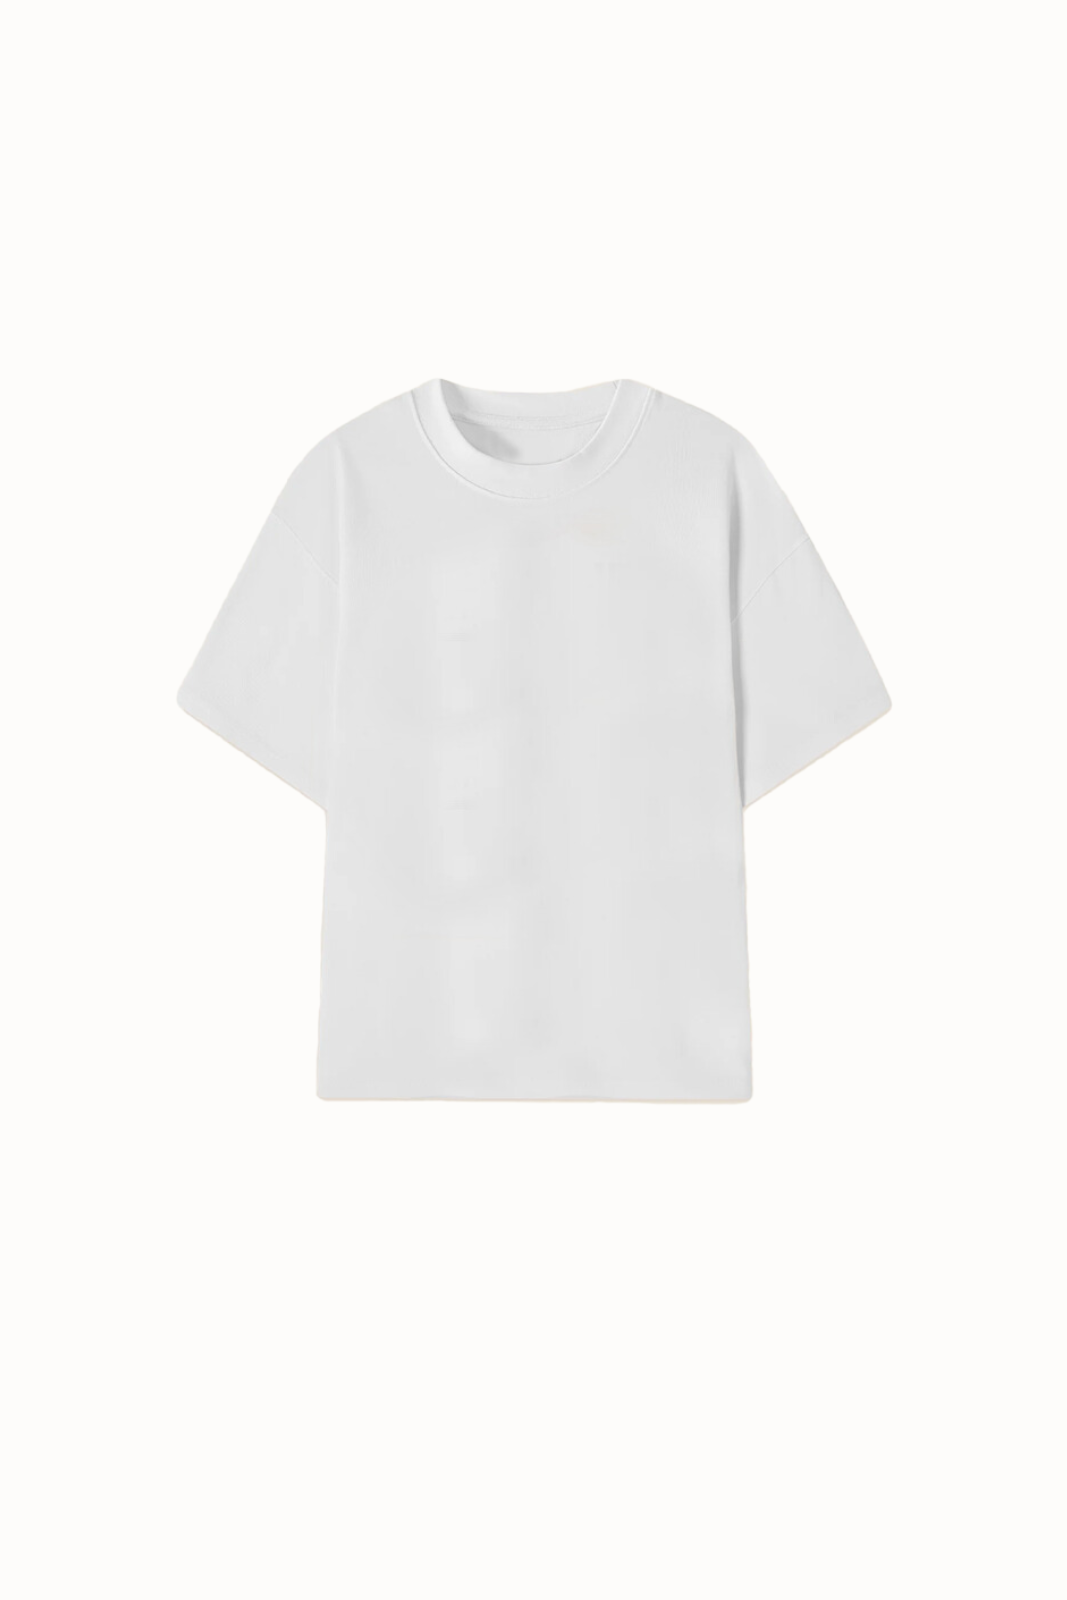 The Plains T-Shirt V2 / White